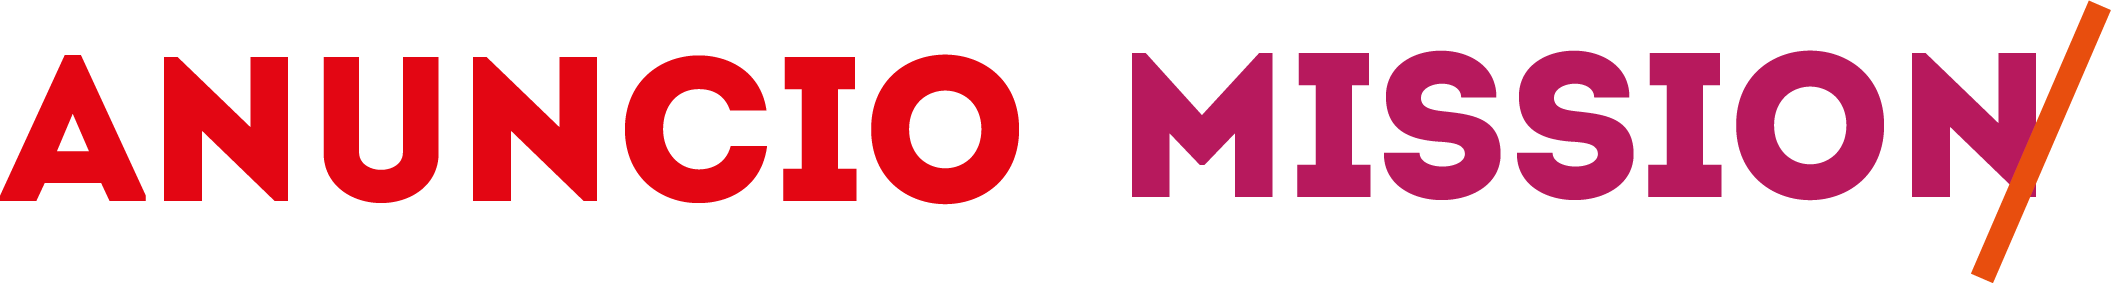 Logo - Anuncio Mission